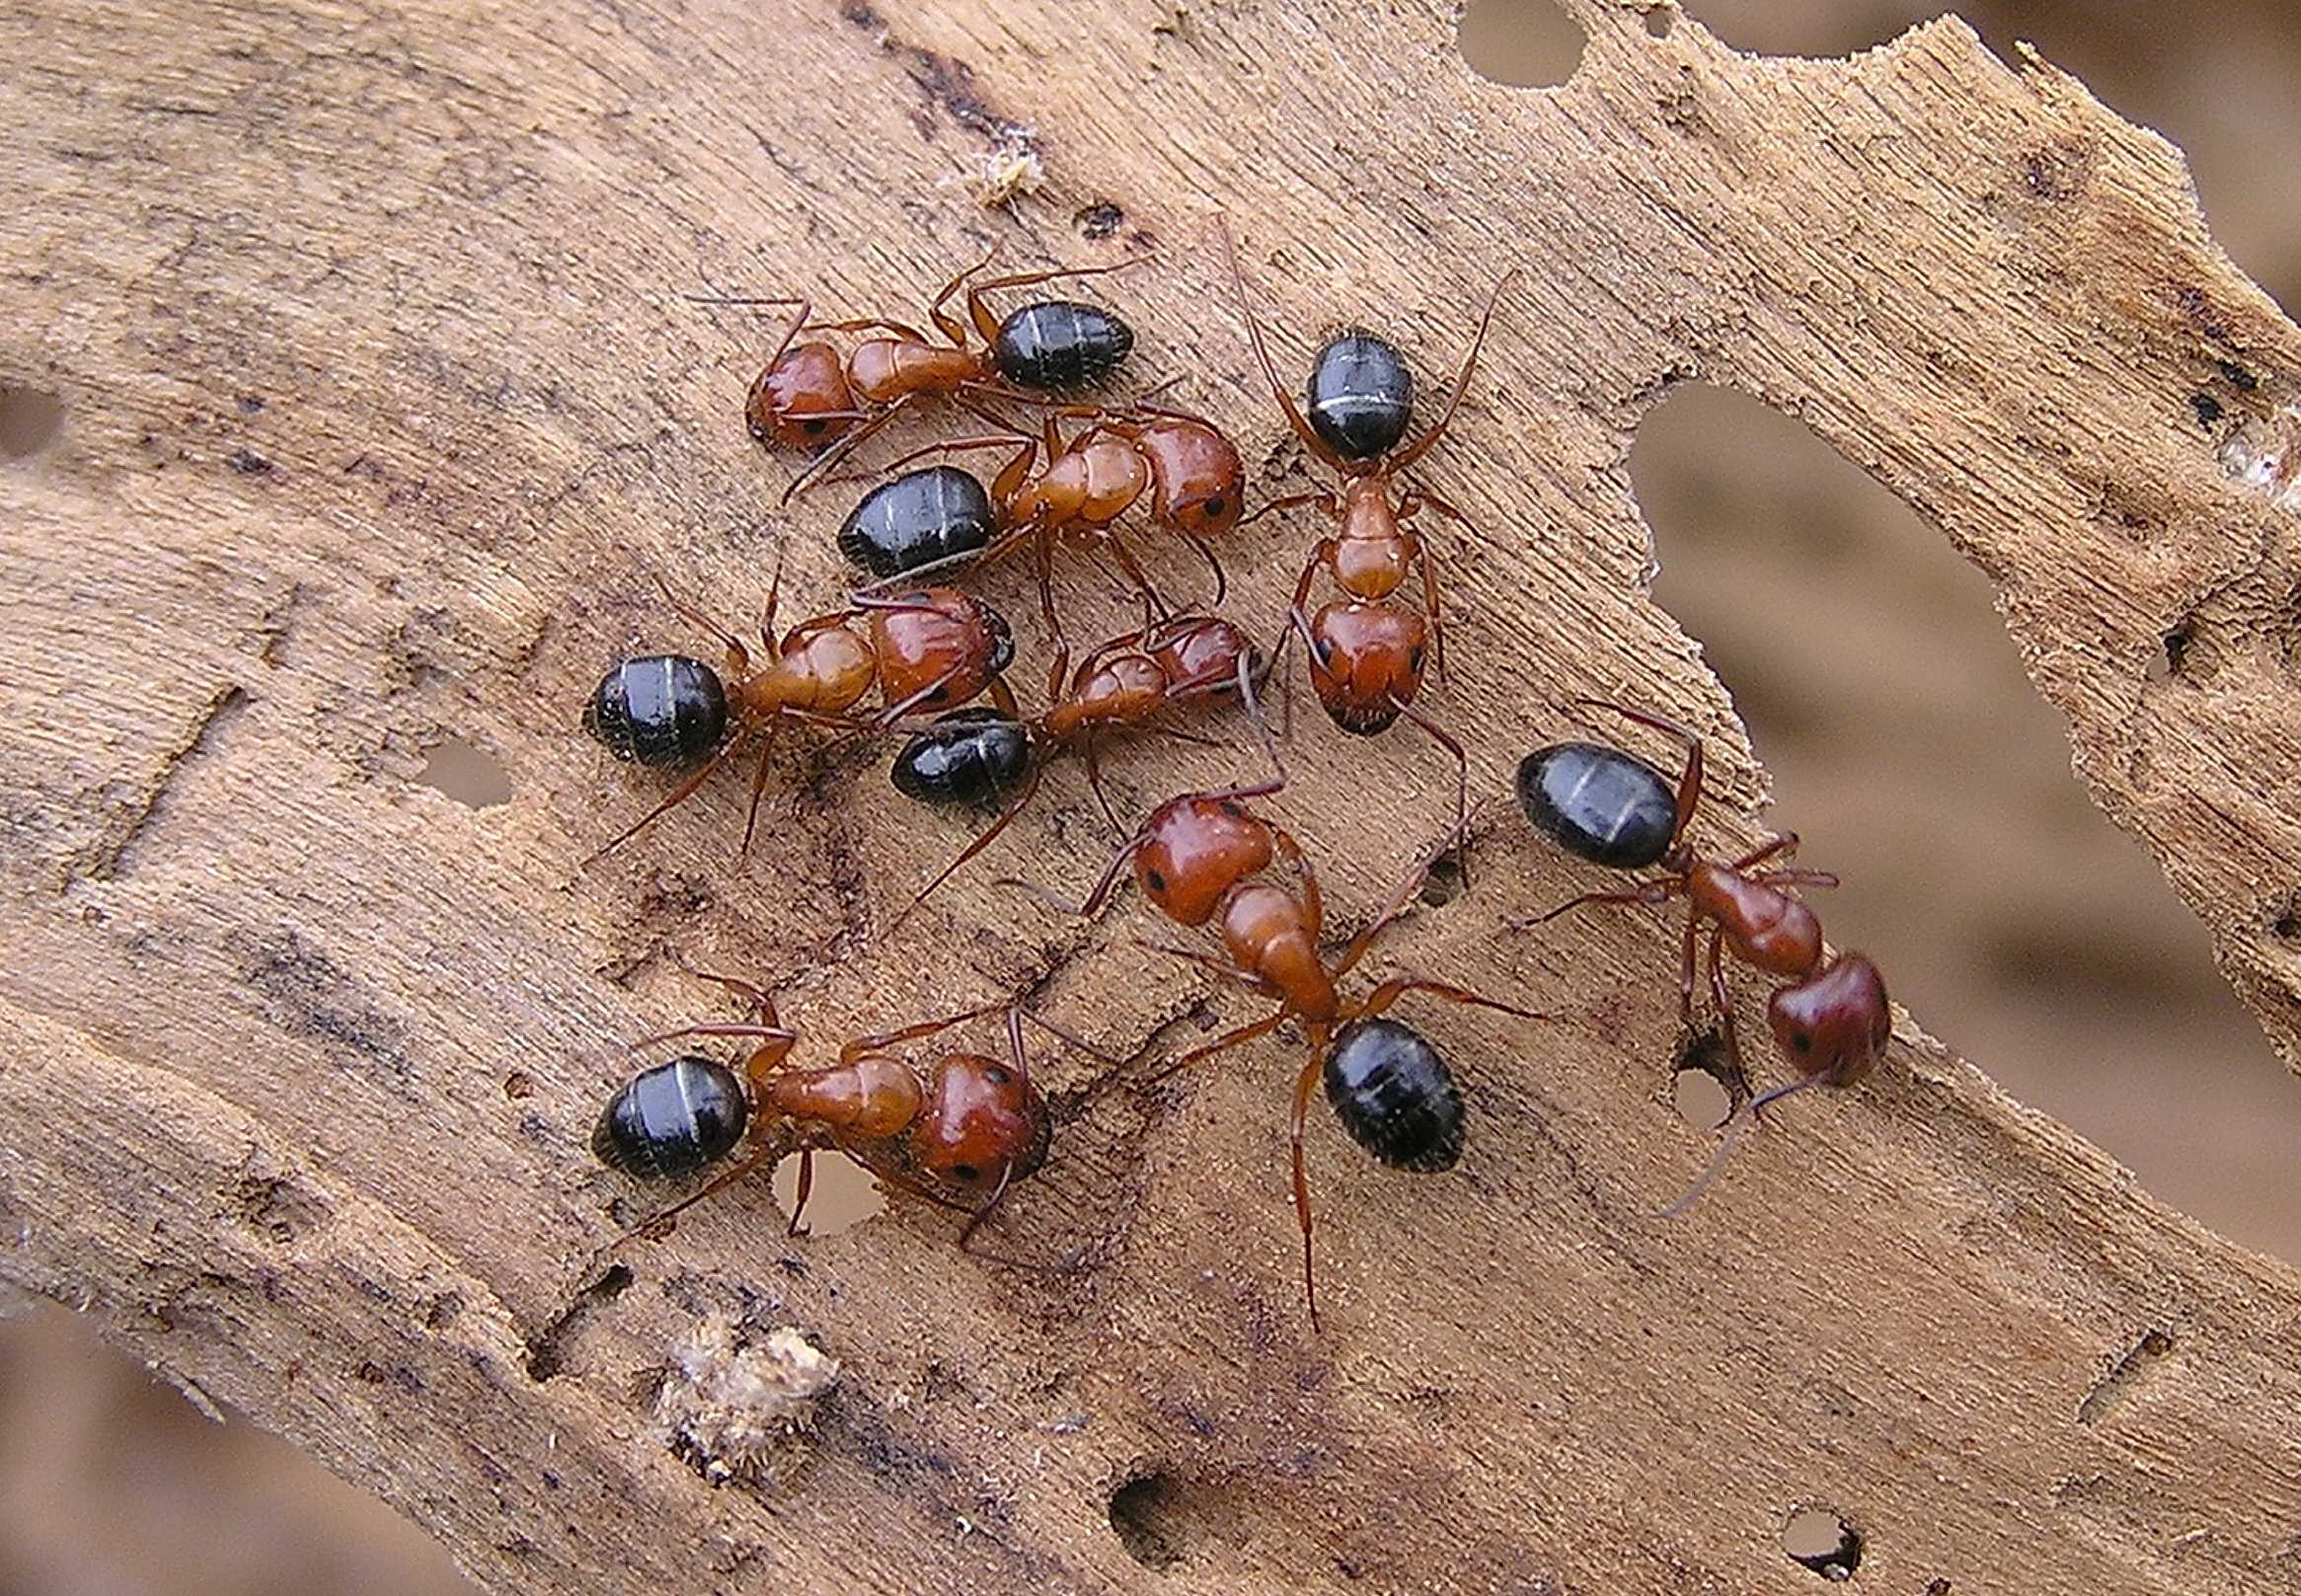 Виды муравьев в россии фото